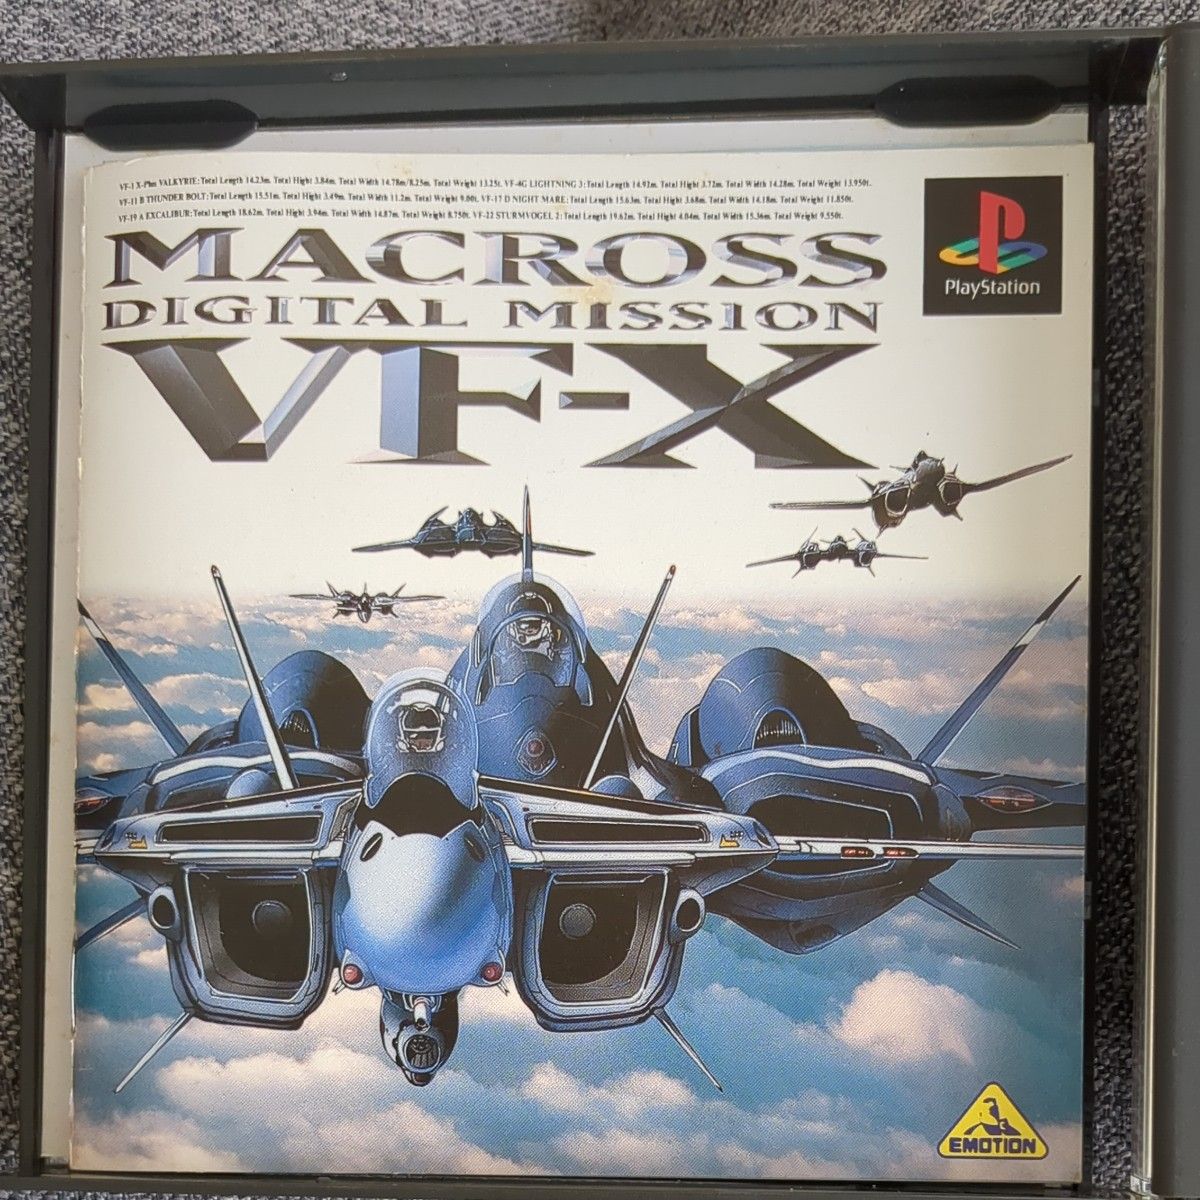 PS1 マクロスデジタルミッションVF-X